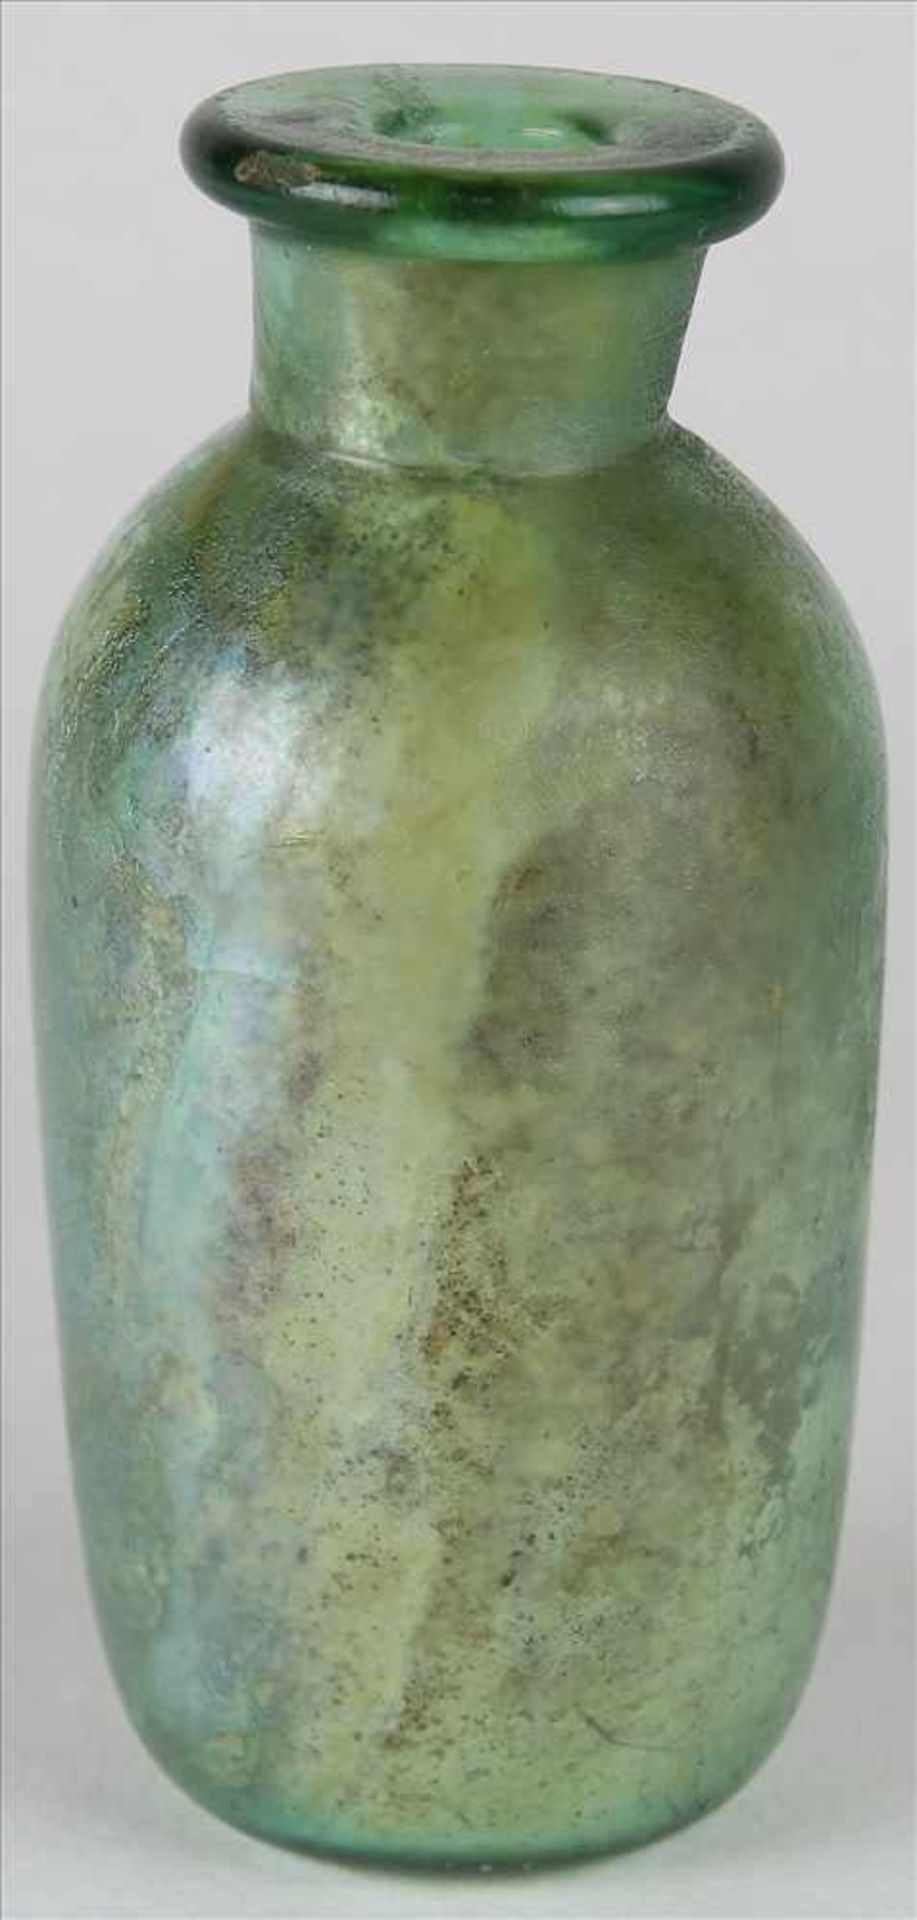 Römische ZylinderflascheCa. 3. Jh n. Chr. Dunkelgrünes Glas mit schillernder Irisierung.